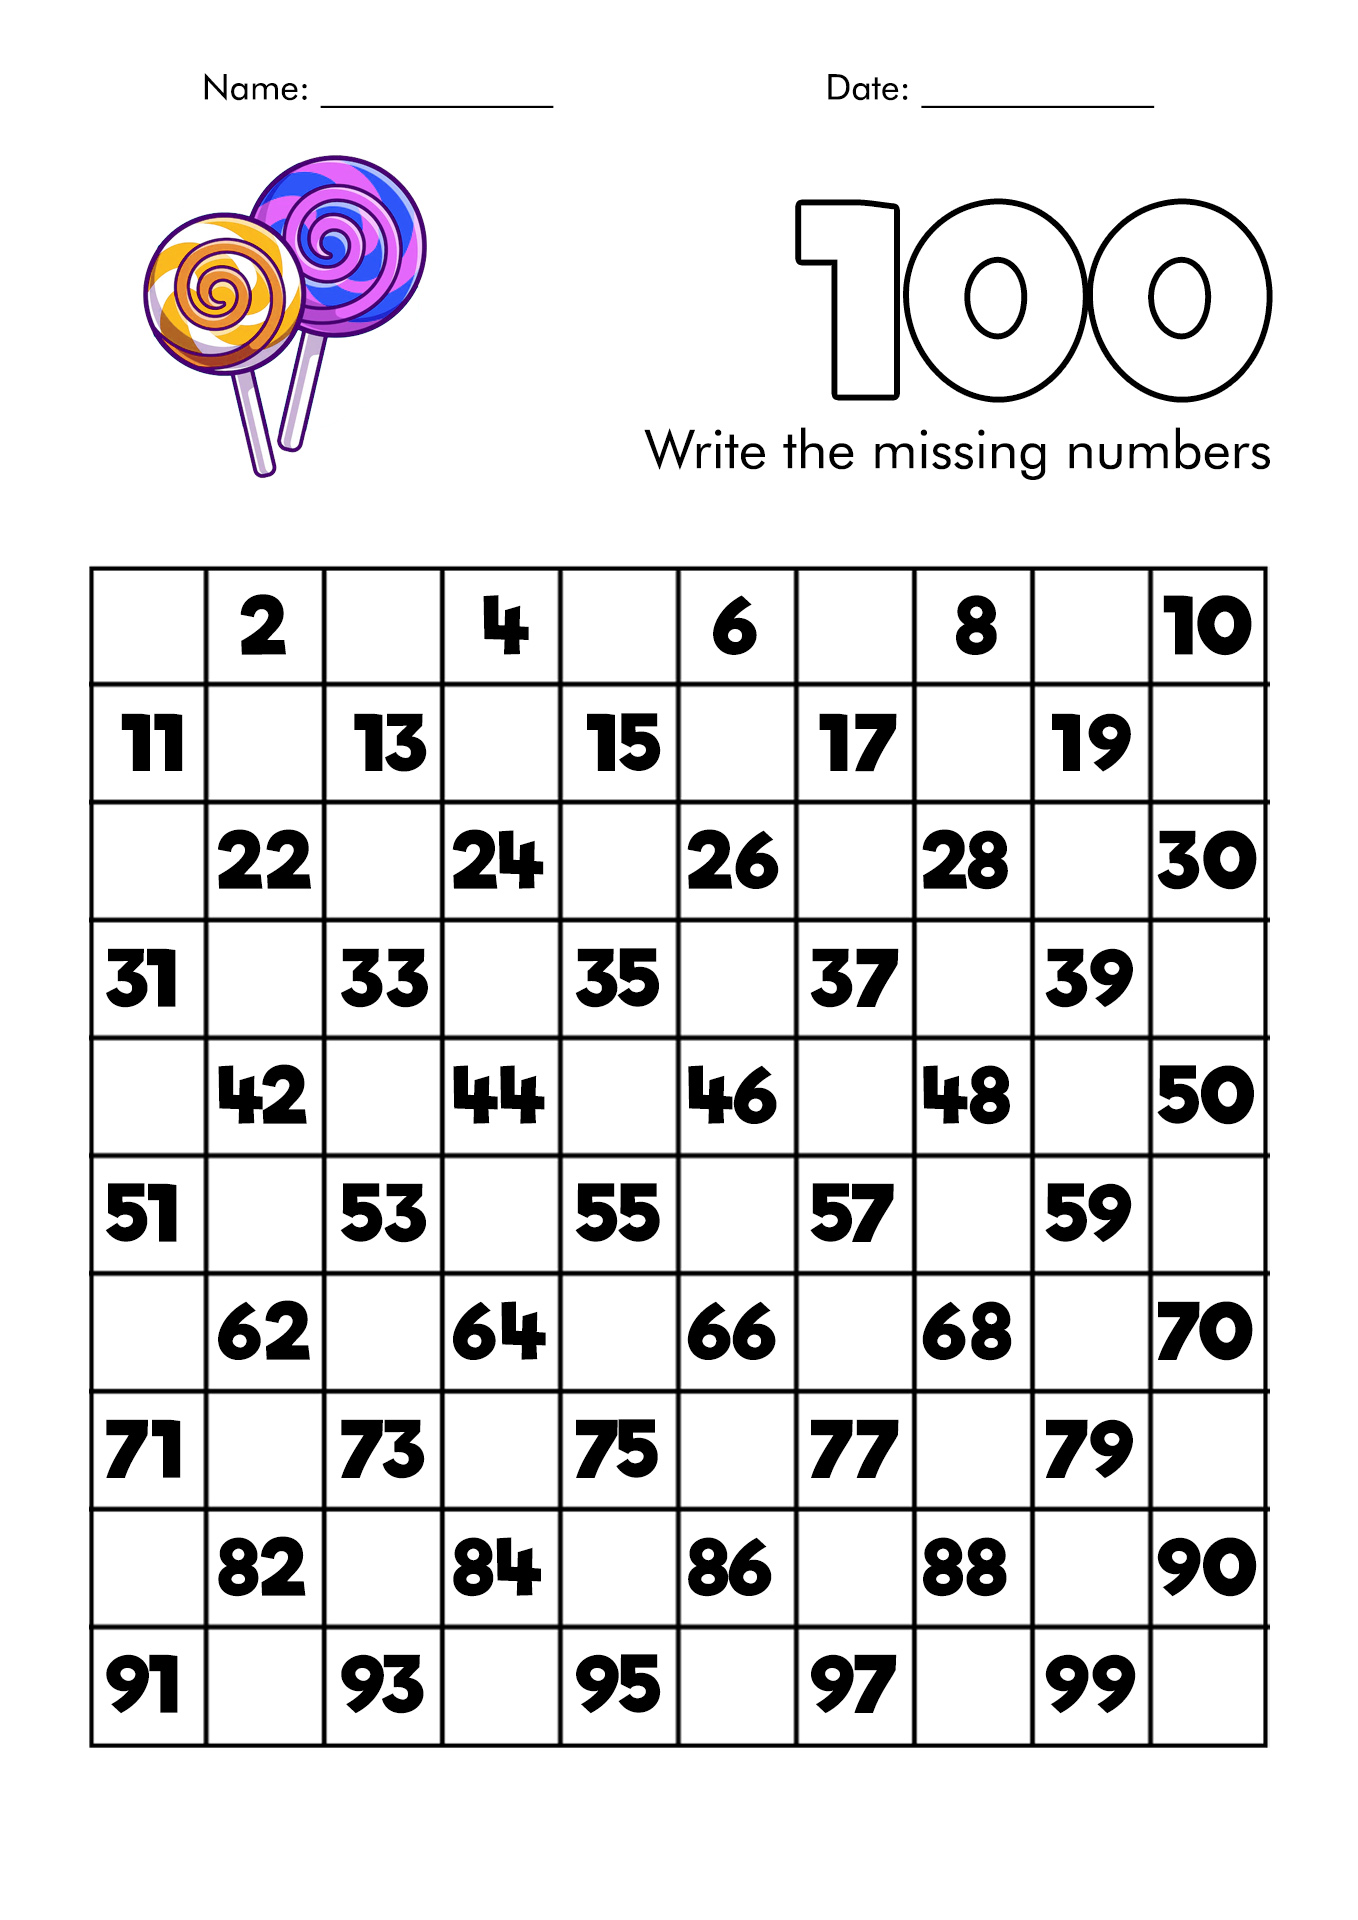 13-best-images-of-100-worksheet-template-printable-blank-100-square-grid-100-blank-worksheet